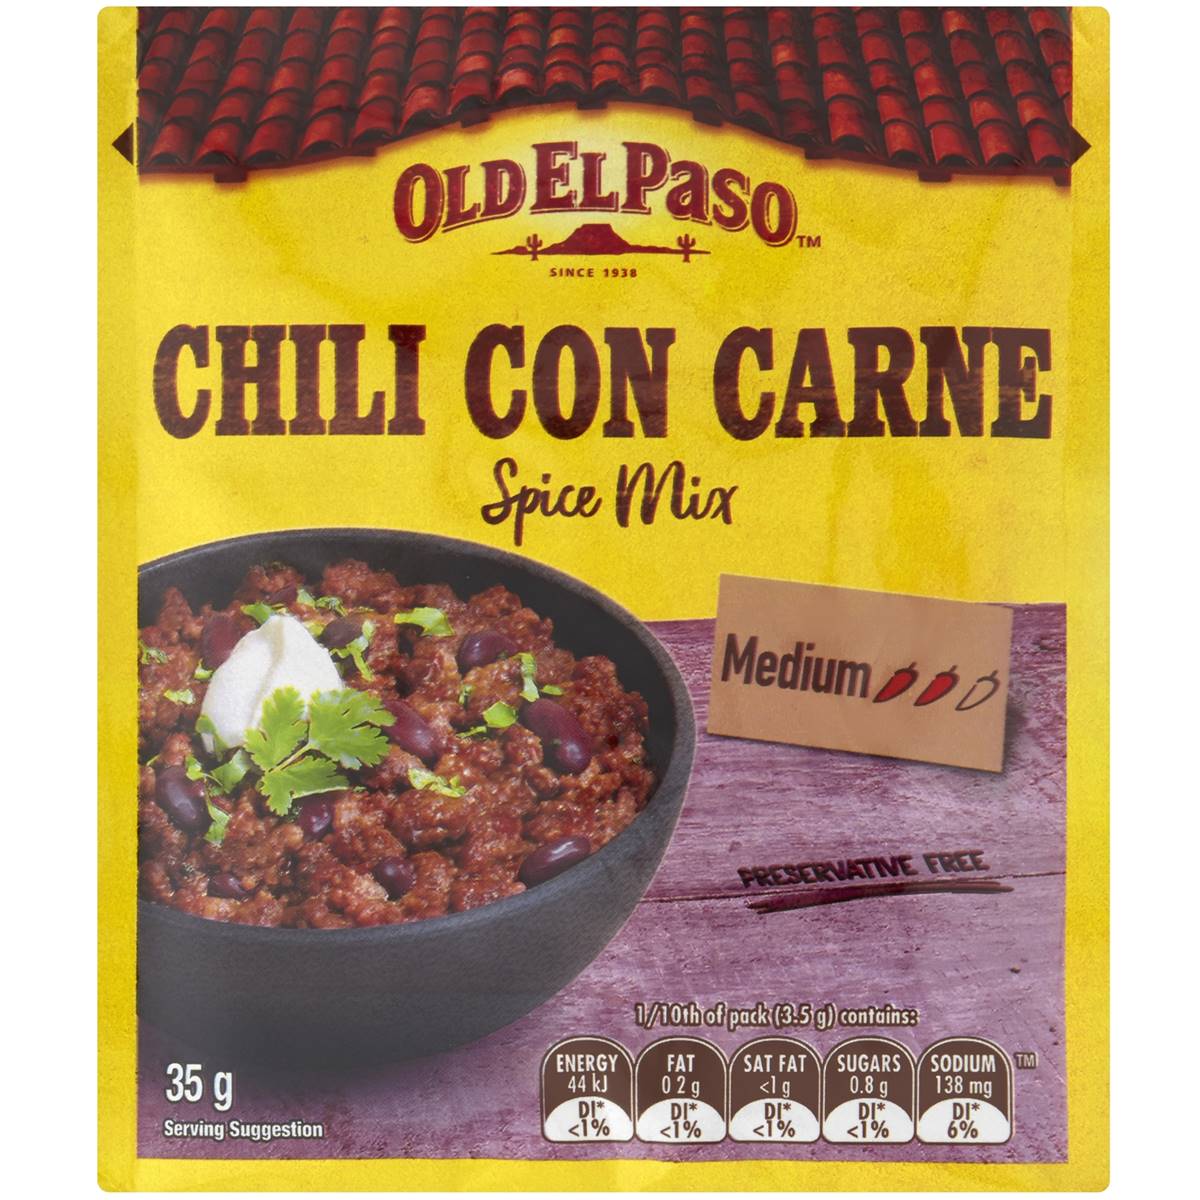 Old El Paso Chili Con Carne Spice Mix Chilli Spice Mix 35g